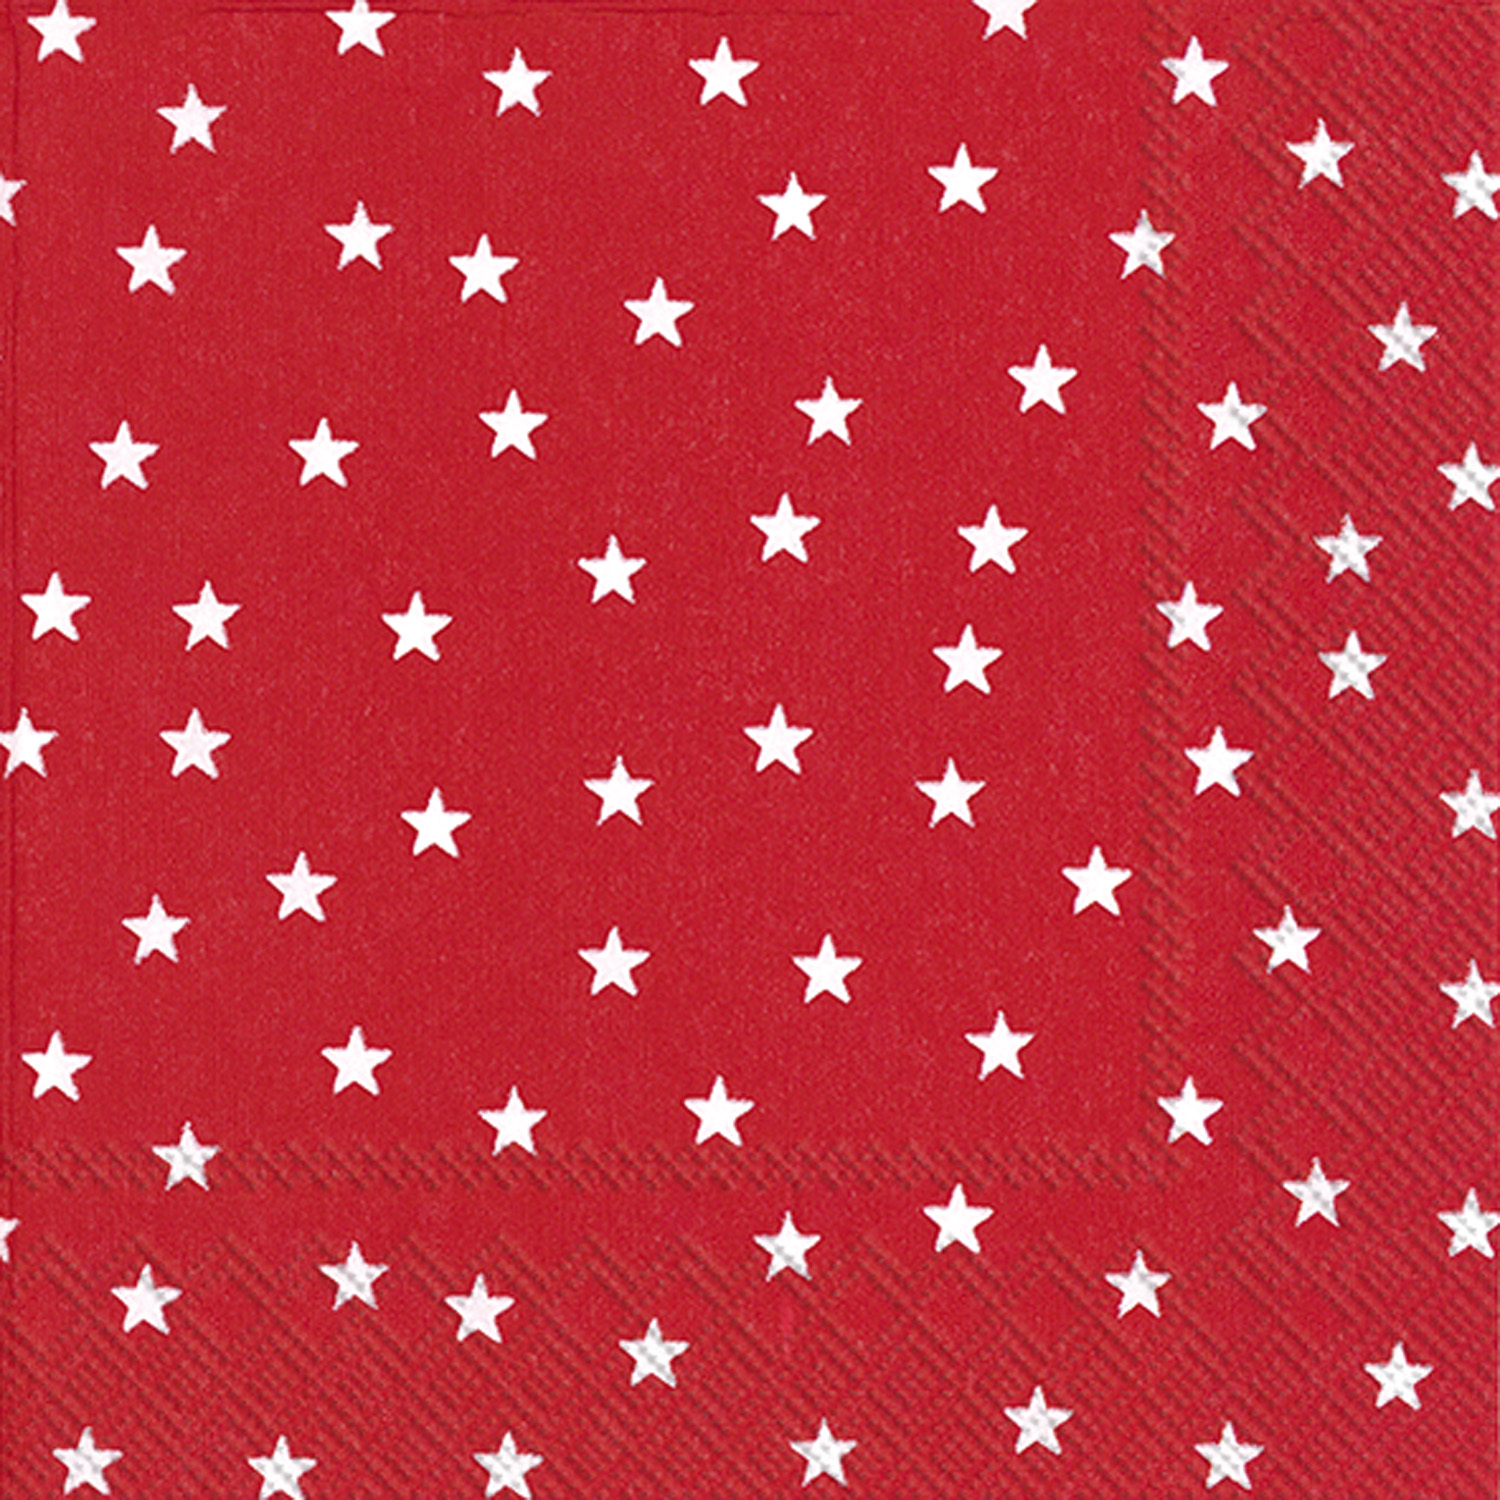 Little Stars red IHR Servietten 20 Stück 33x33cm 